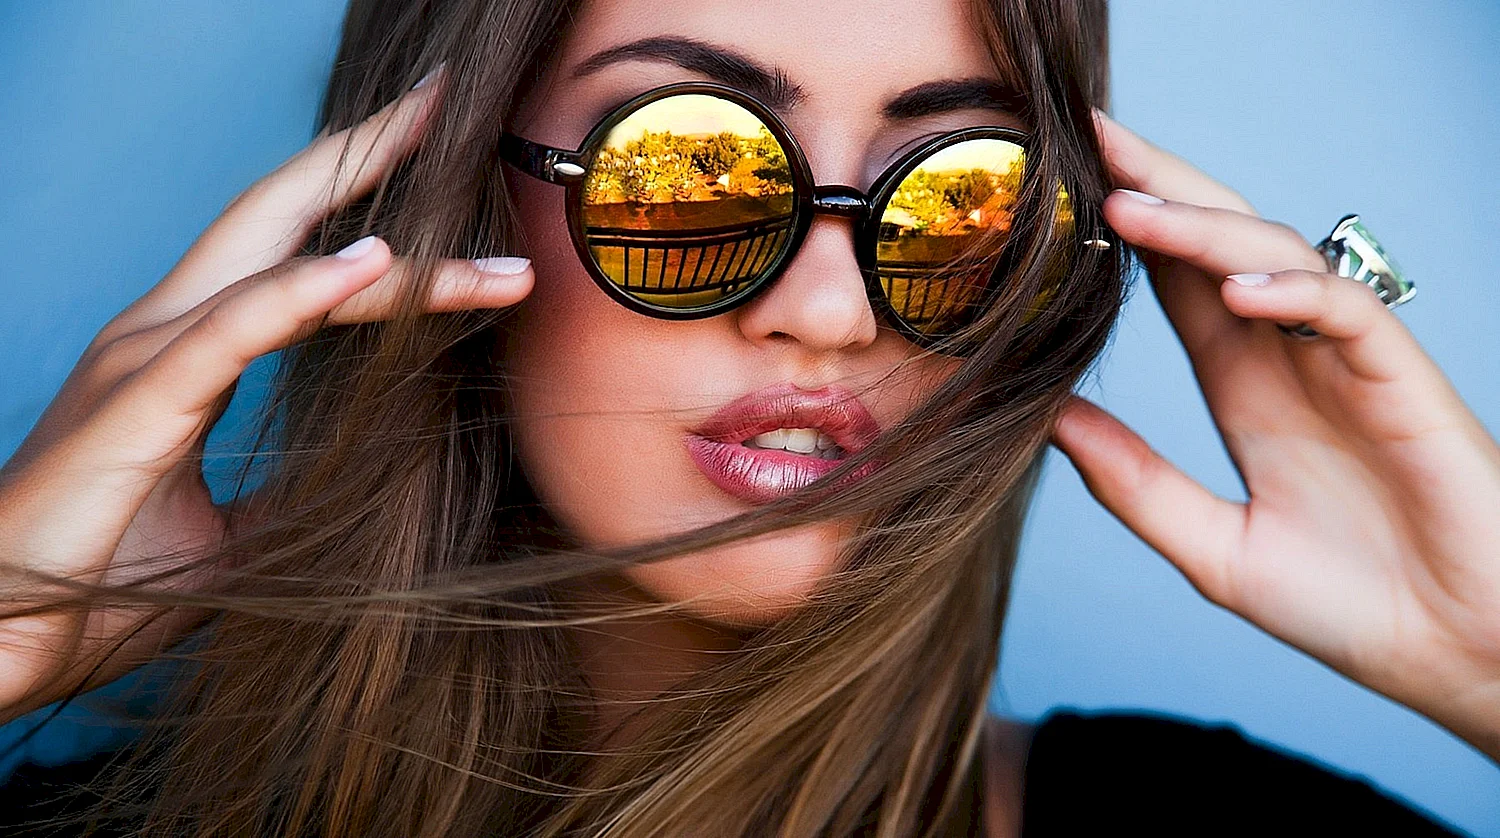 Девушка в солнечных очках